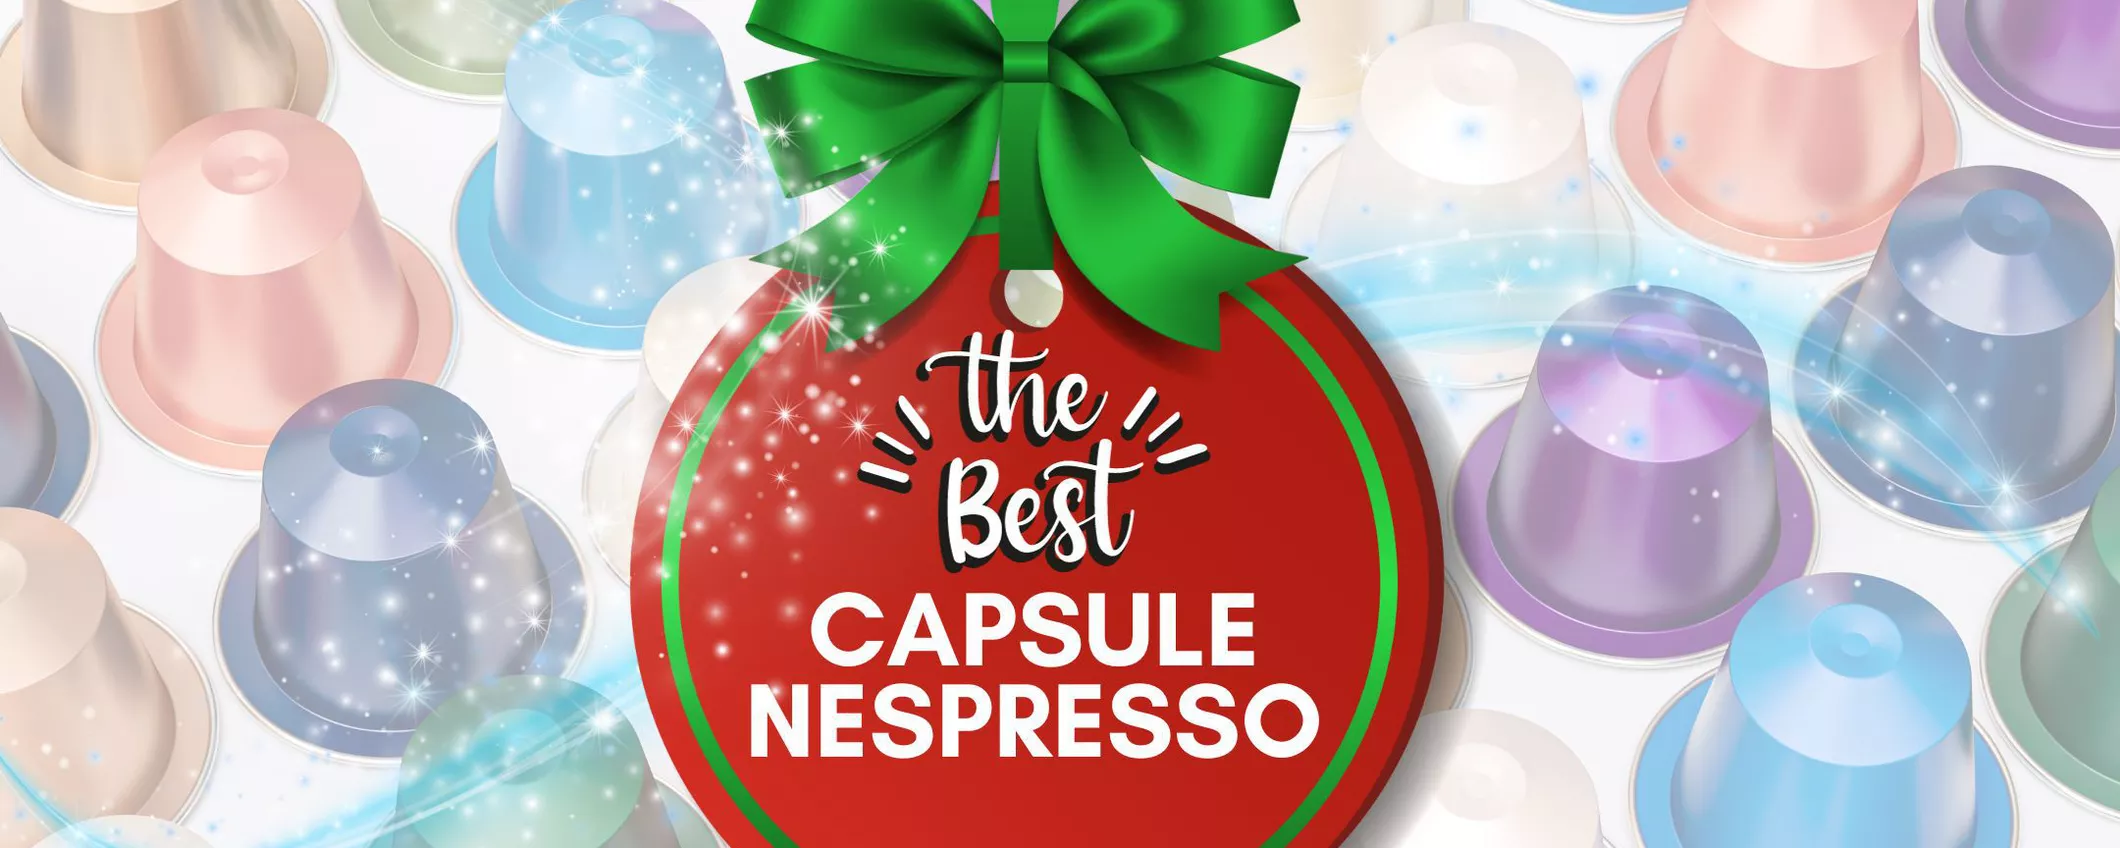 Capsule Nespresso in OFFERTA: Fai scorta per Natale